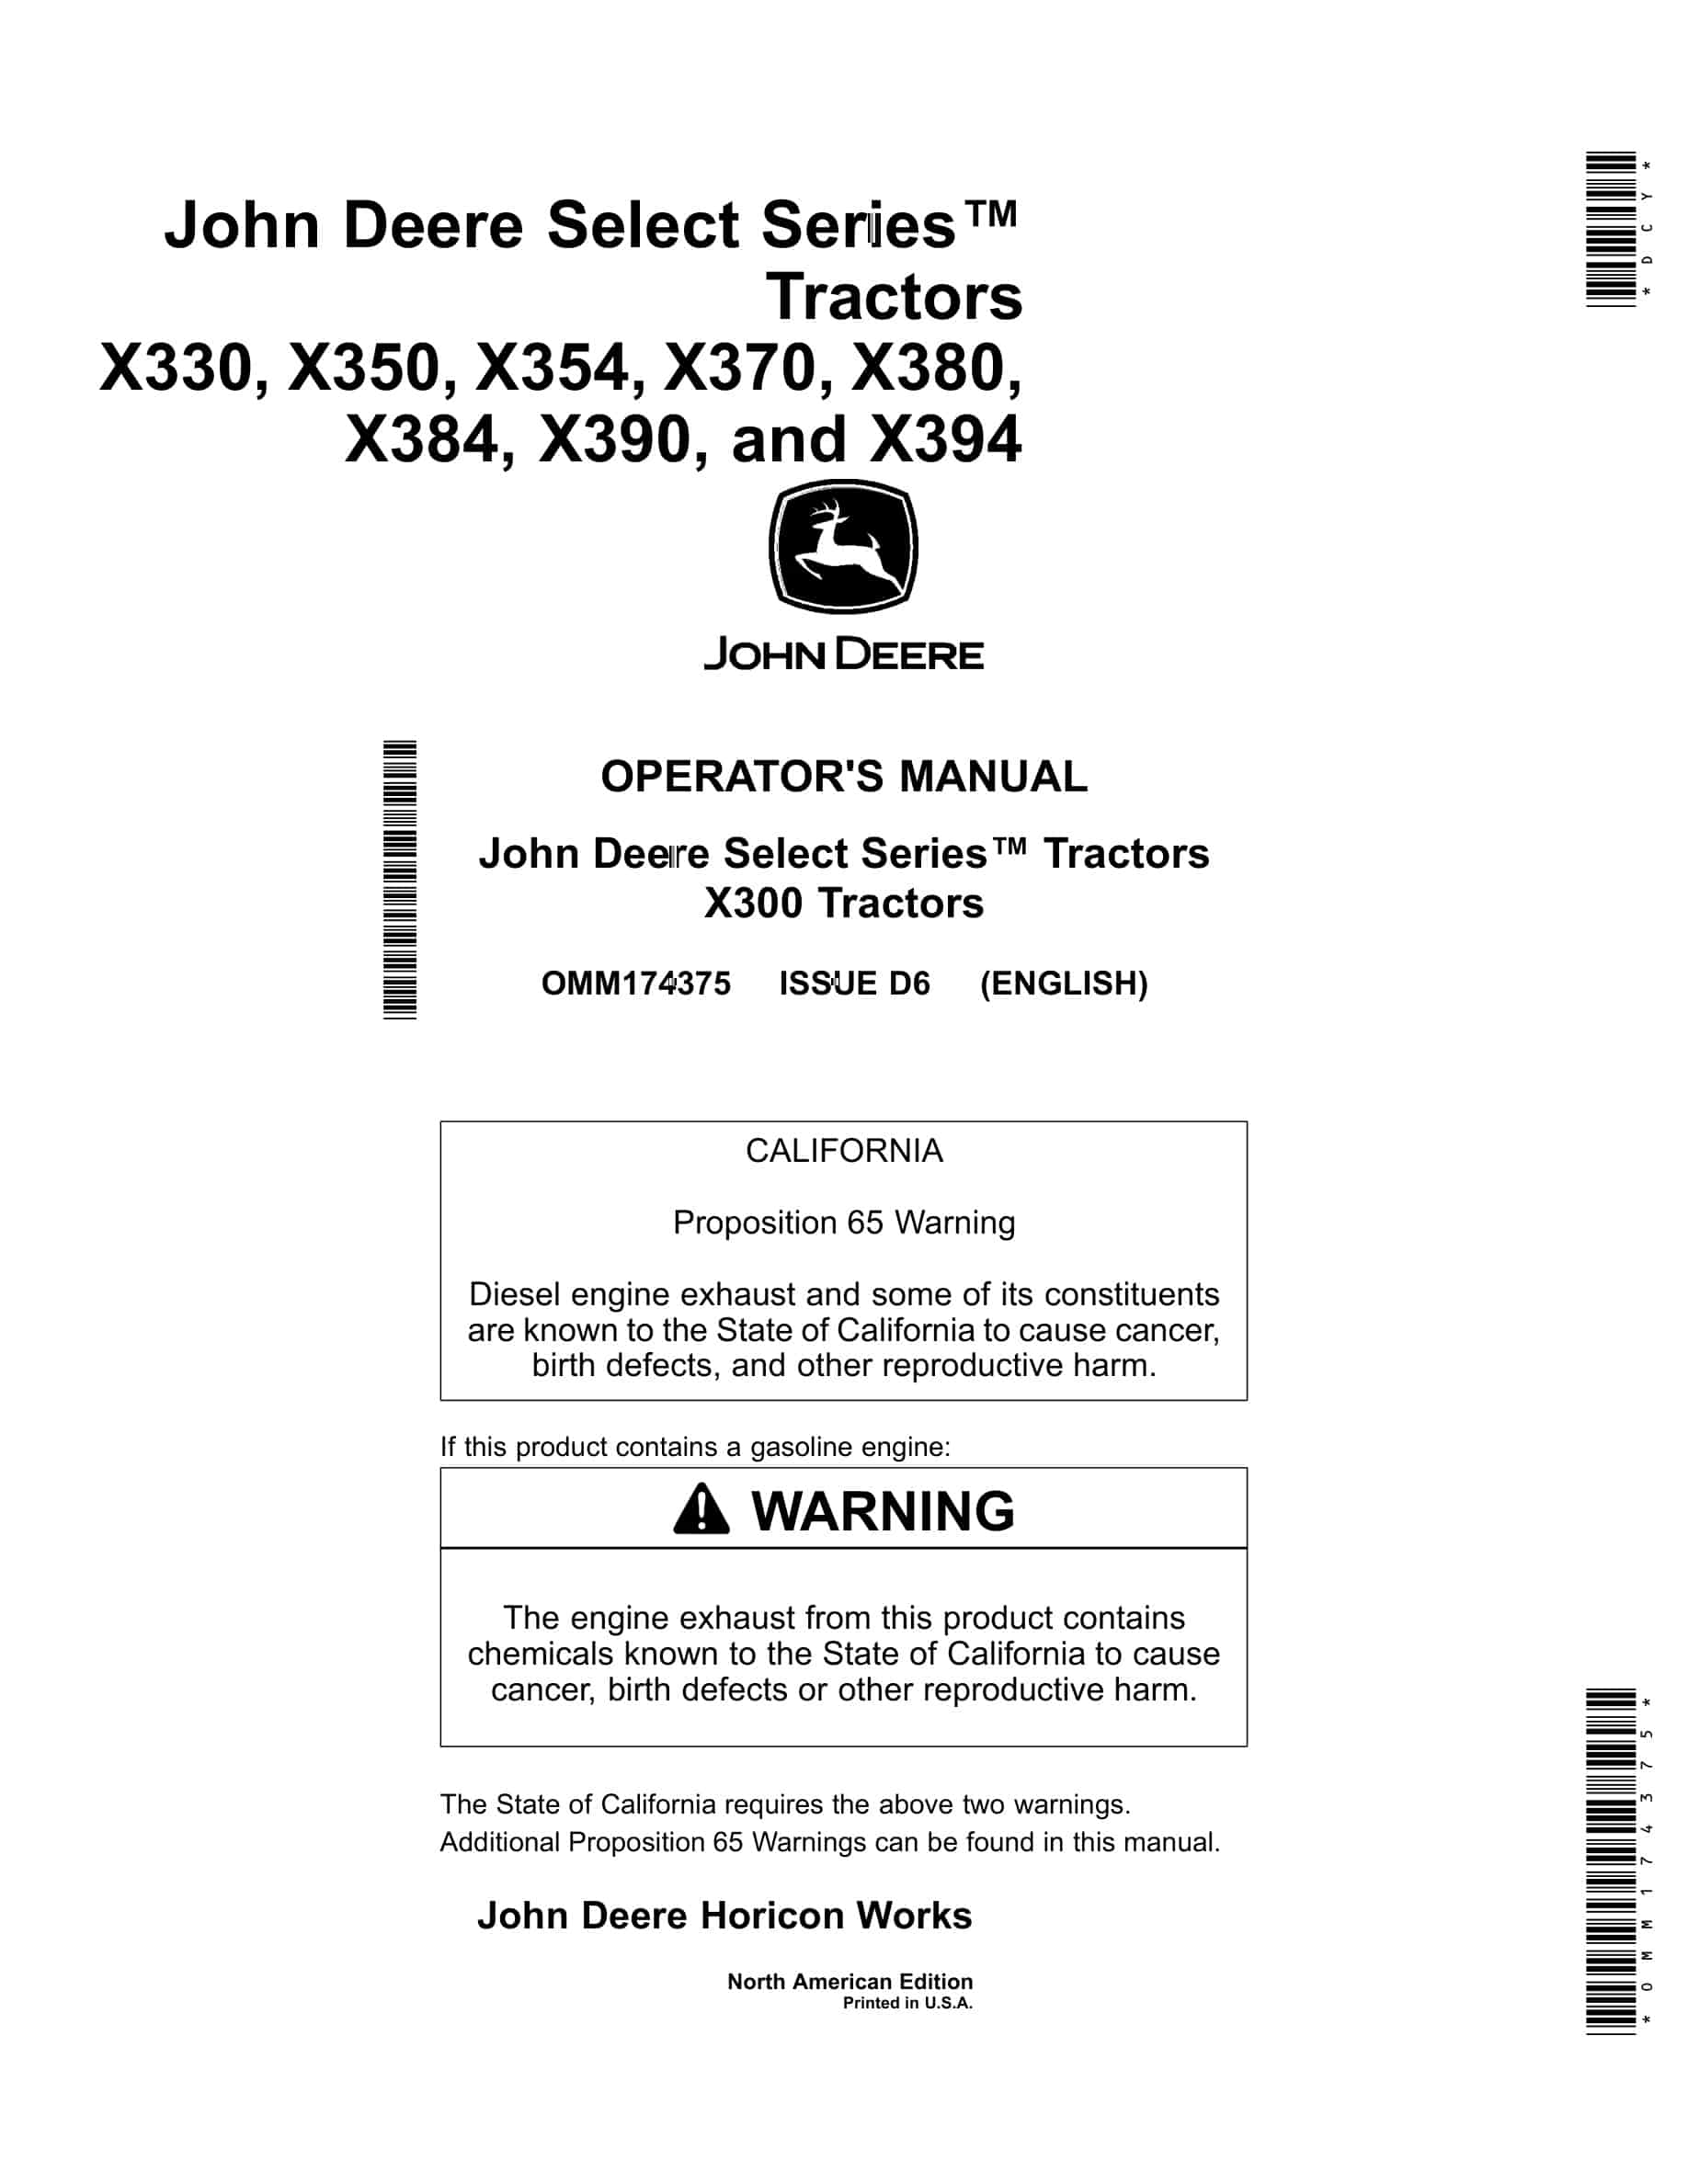 John Deere X330, X350, X354, X370, X380, X384, X390, and X394 Tractor Operator Manual OMM174375-1